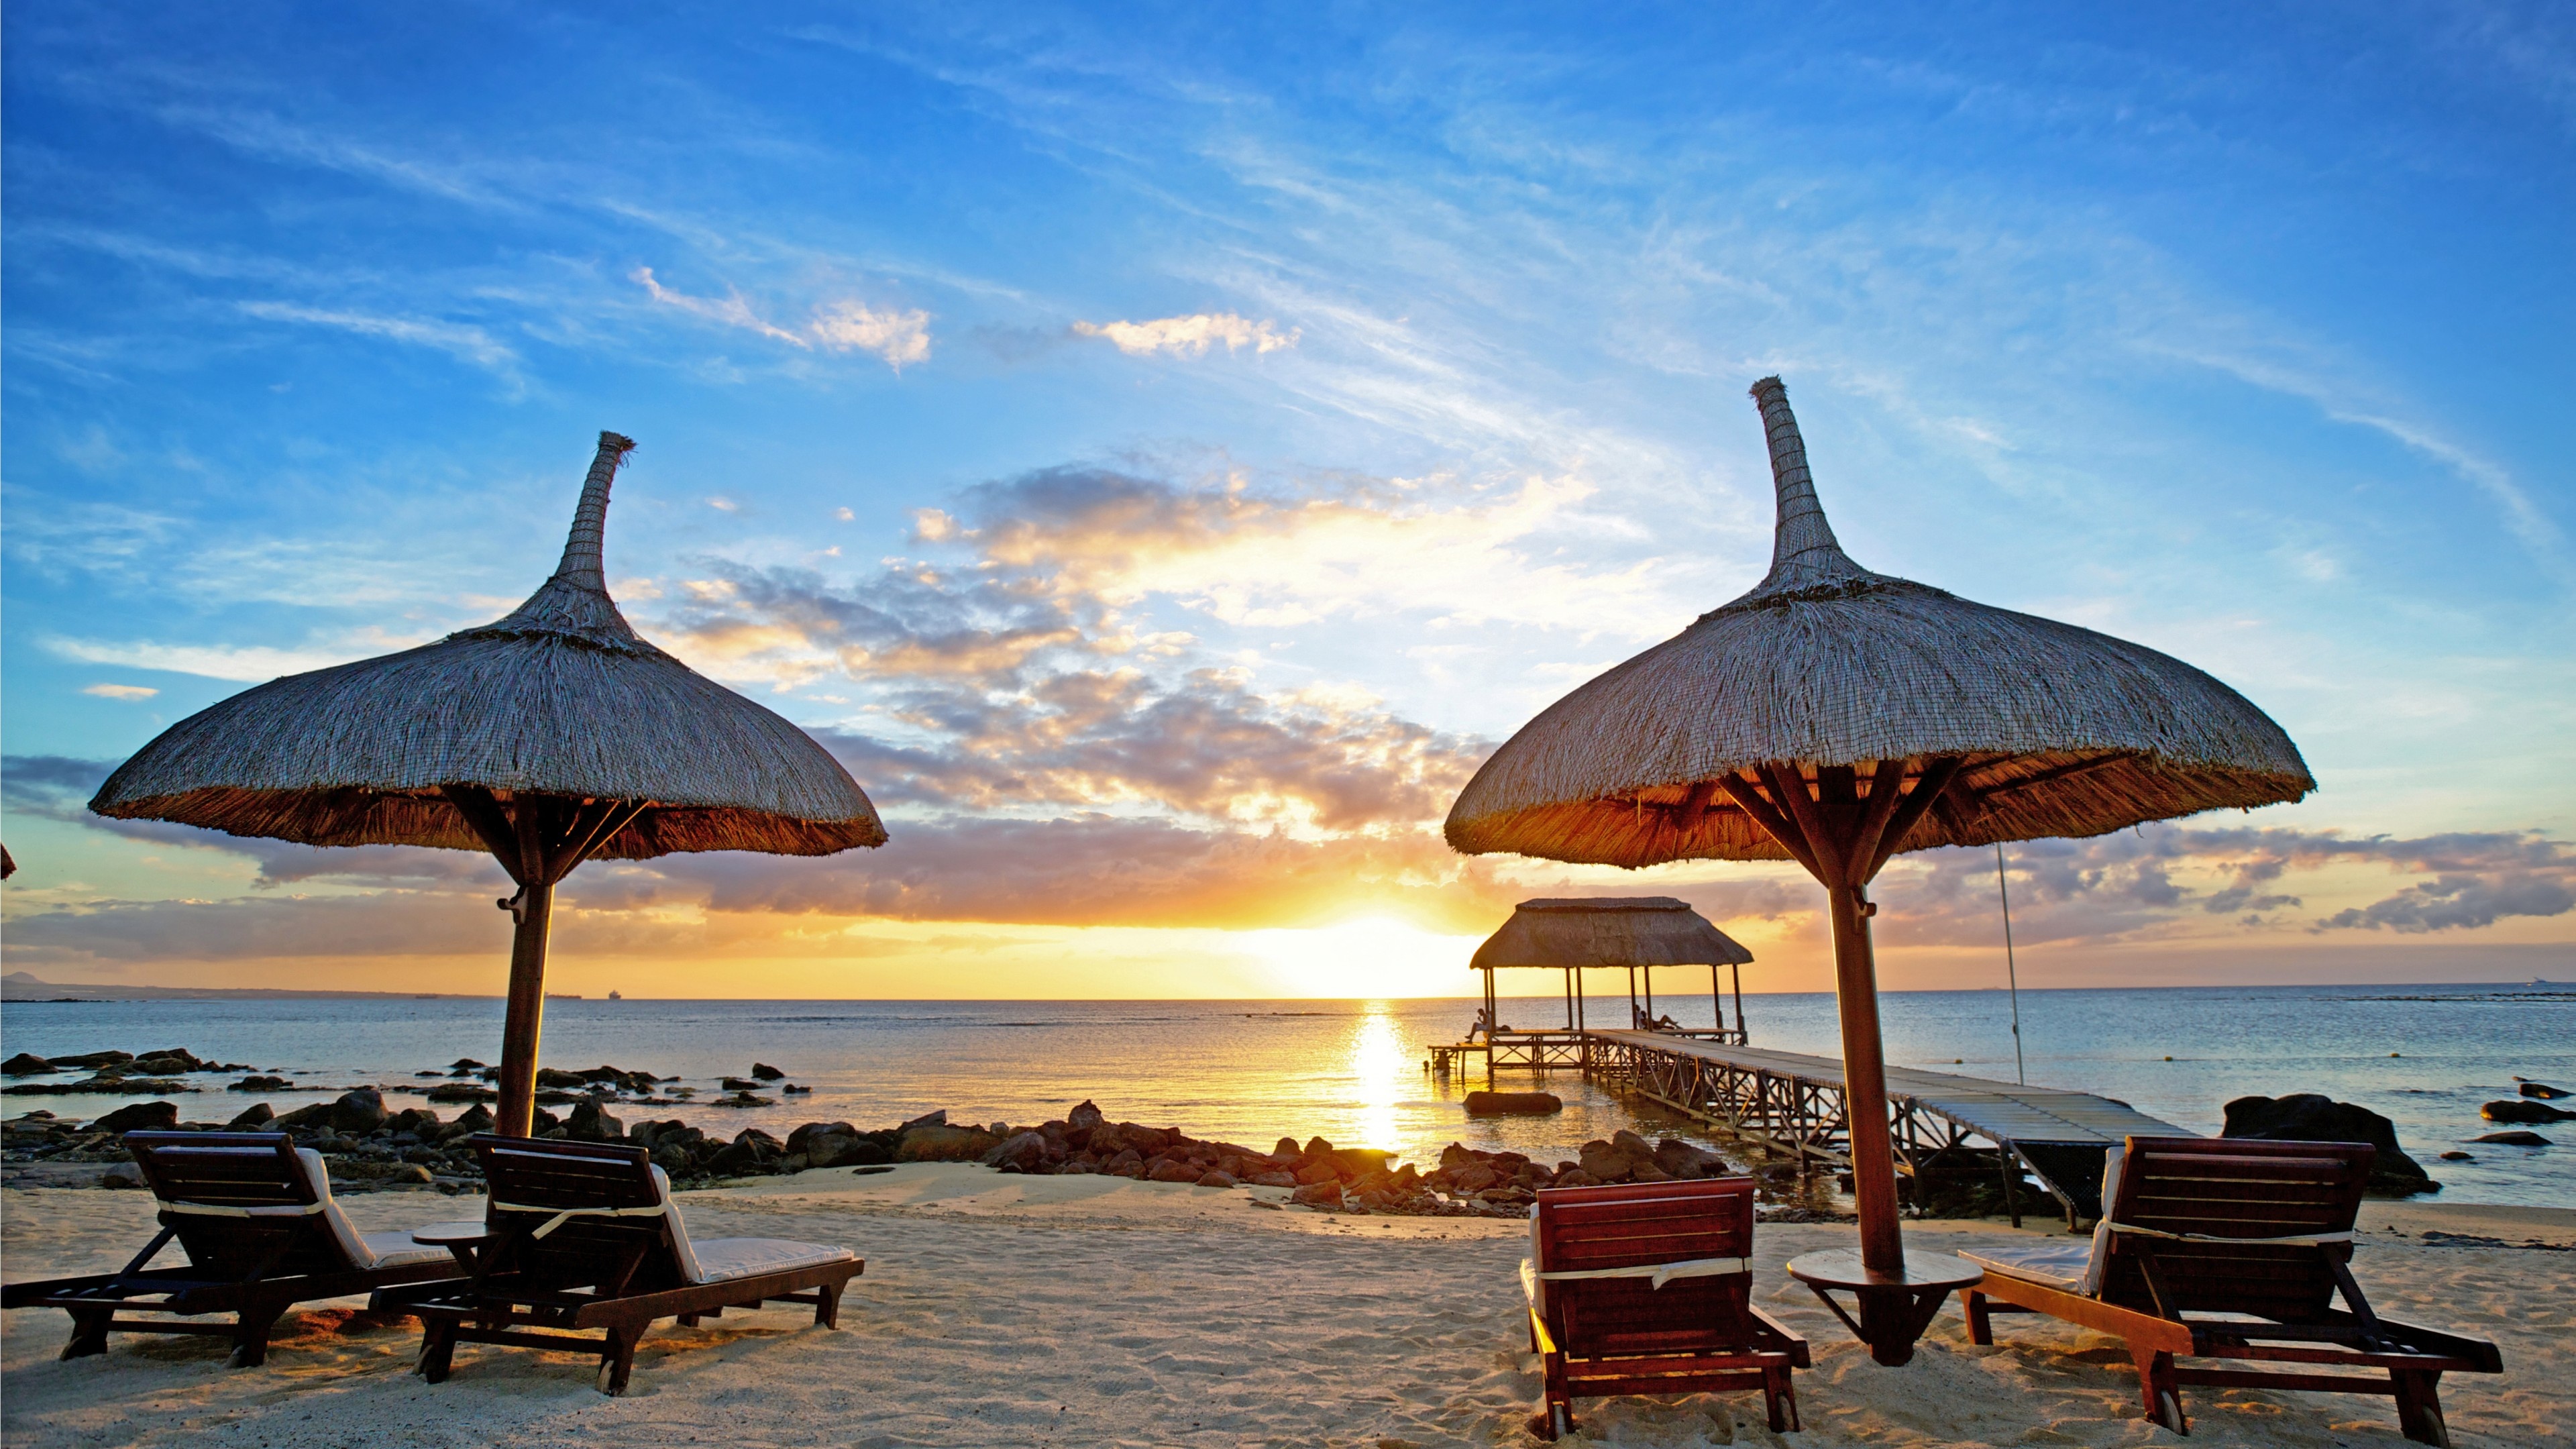 Beach Umbrella: Mauritius, Sunset, Indian Ocean, A bell-shaped canopy. 3840x2160 4K Wallpaper.